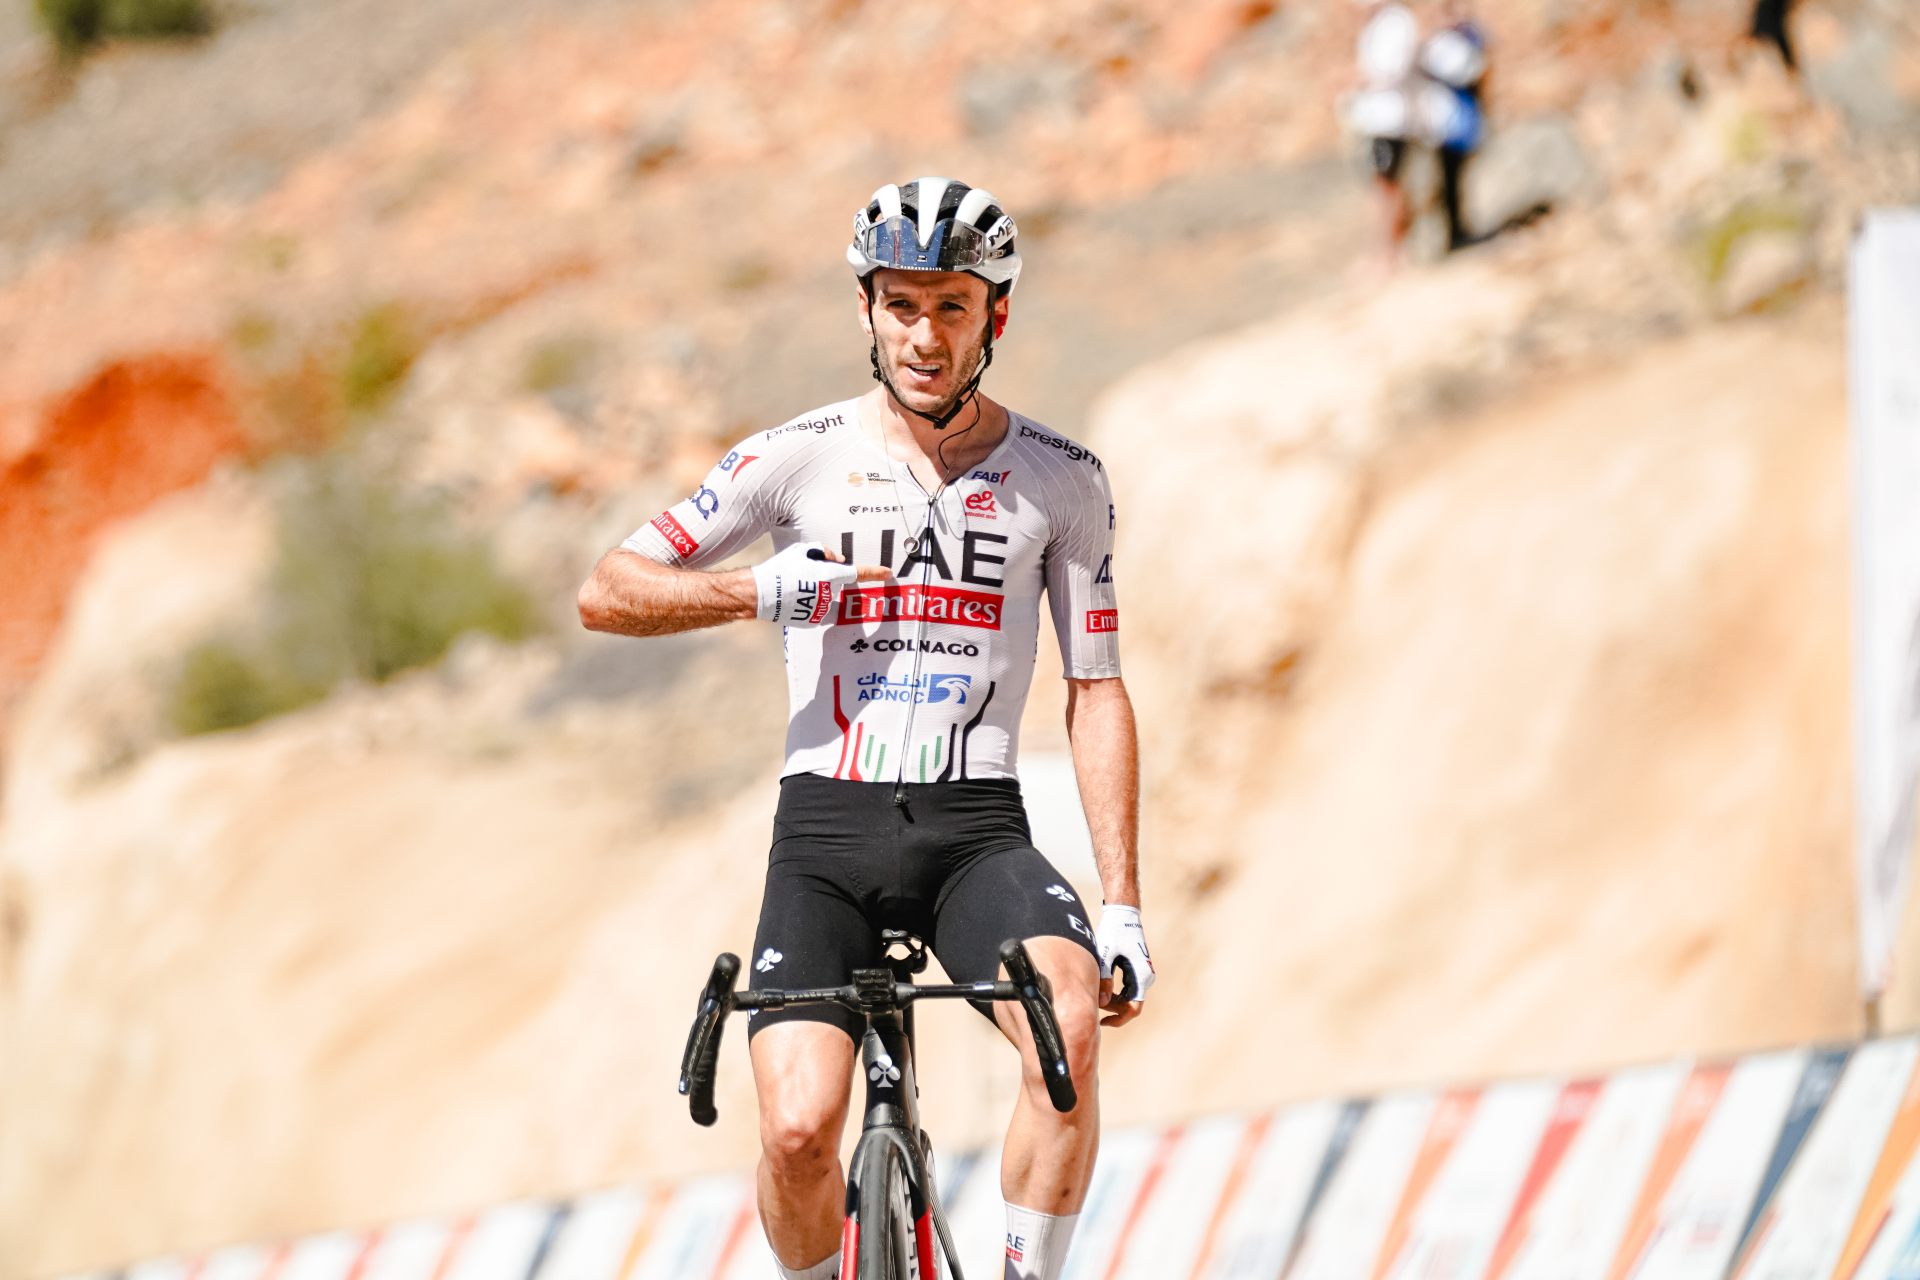 Adam Yates palcem prawej ręki wskazuje na swoją koszulkę podczas finiszu na Zielonej Górze w Omanie